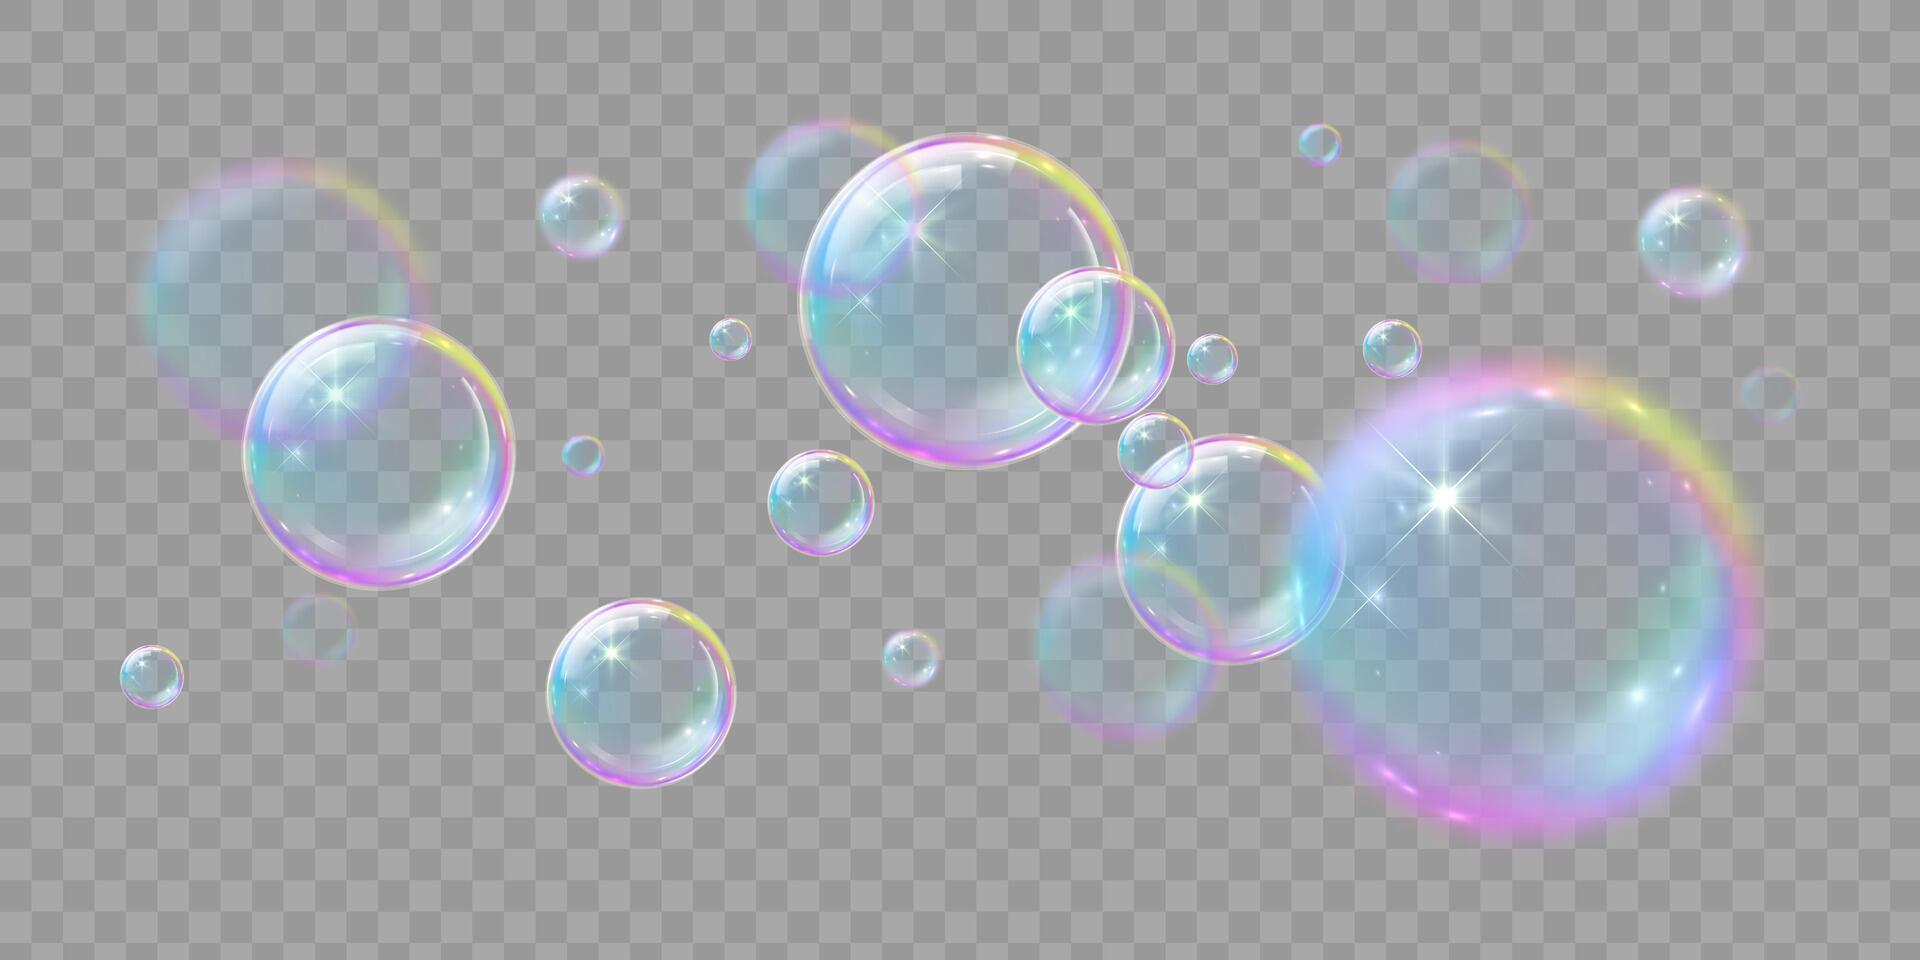 Soap bubbles, illustrations of realistic transparent soap bubbles on transparent cut out background vector